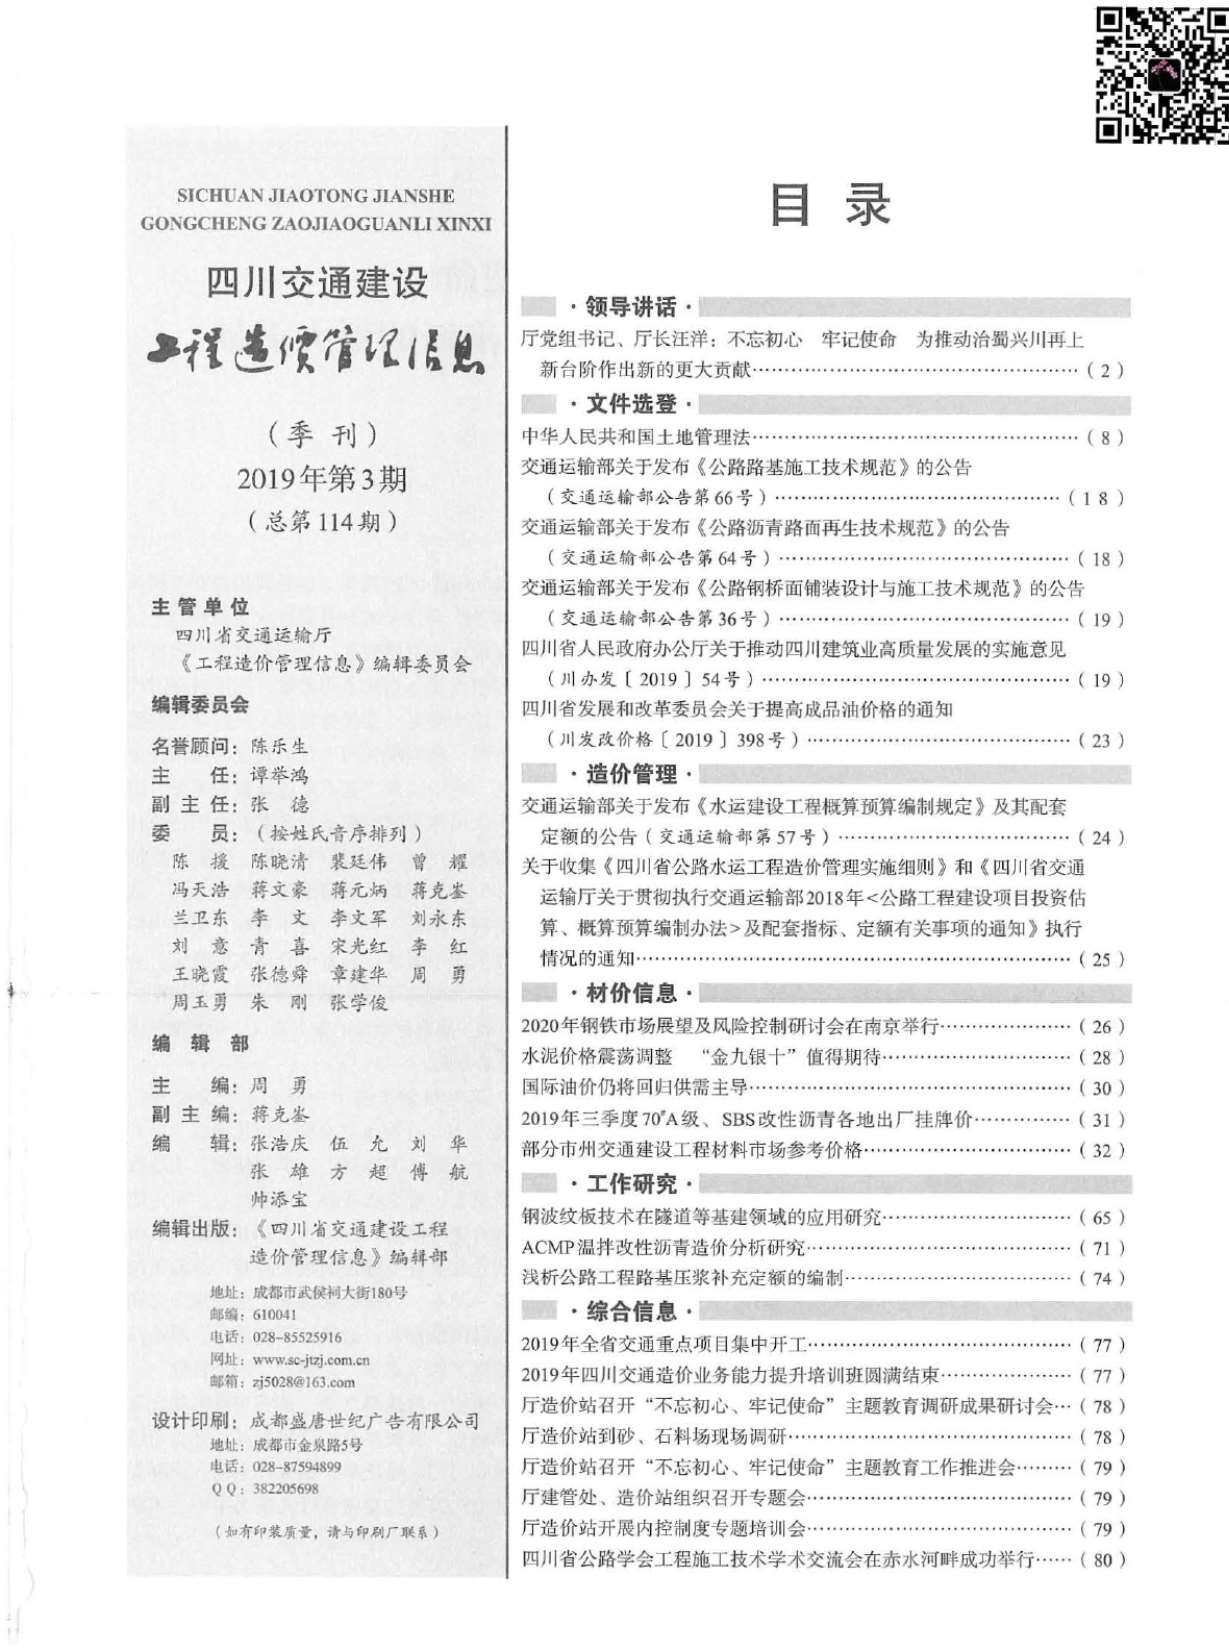 2019年3期四川交通造价信息期刊PDF扫描件